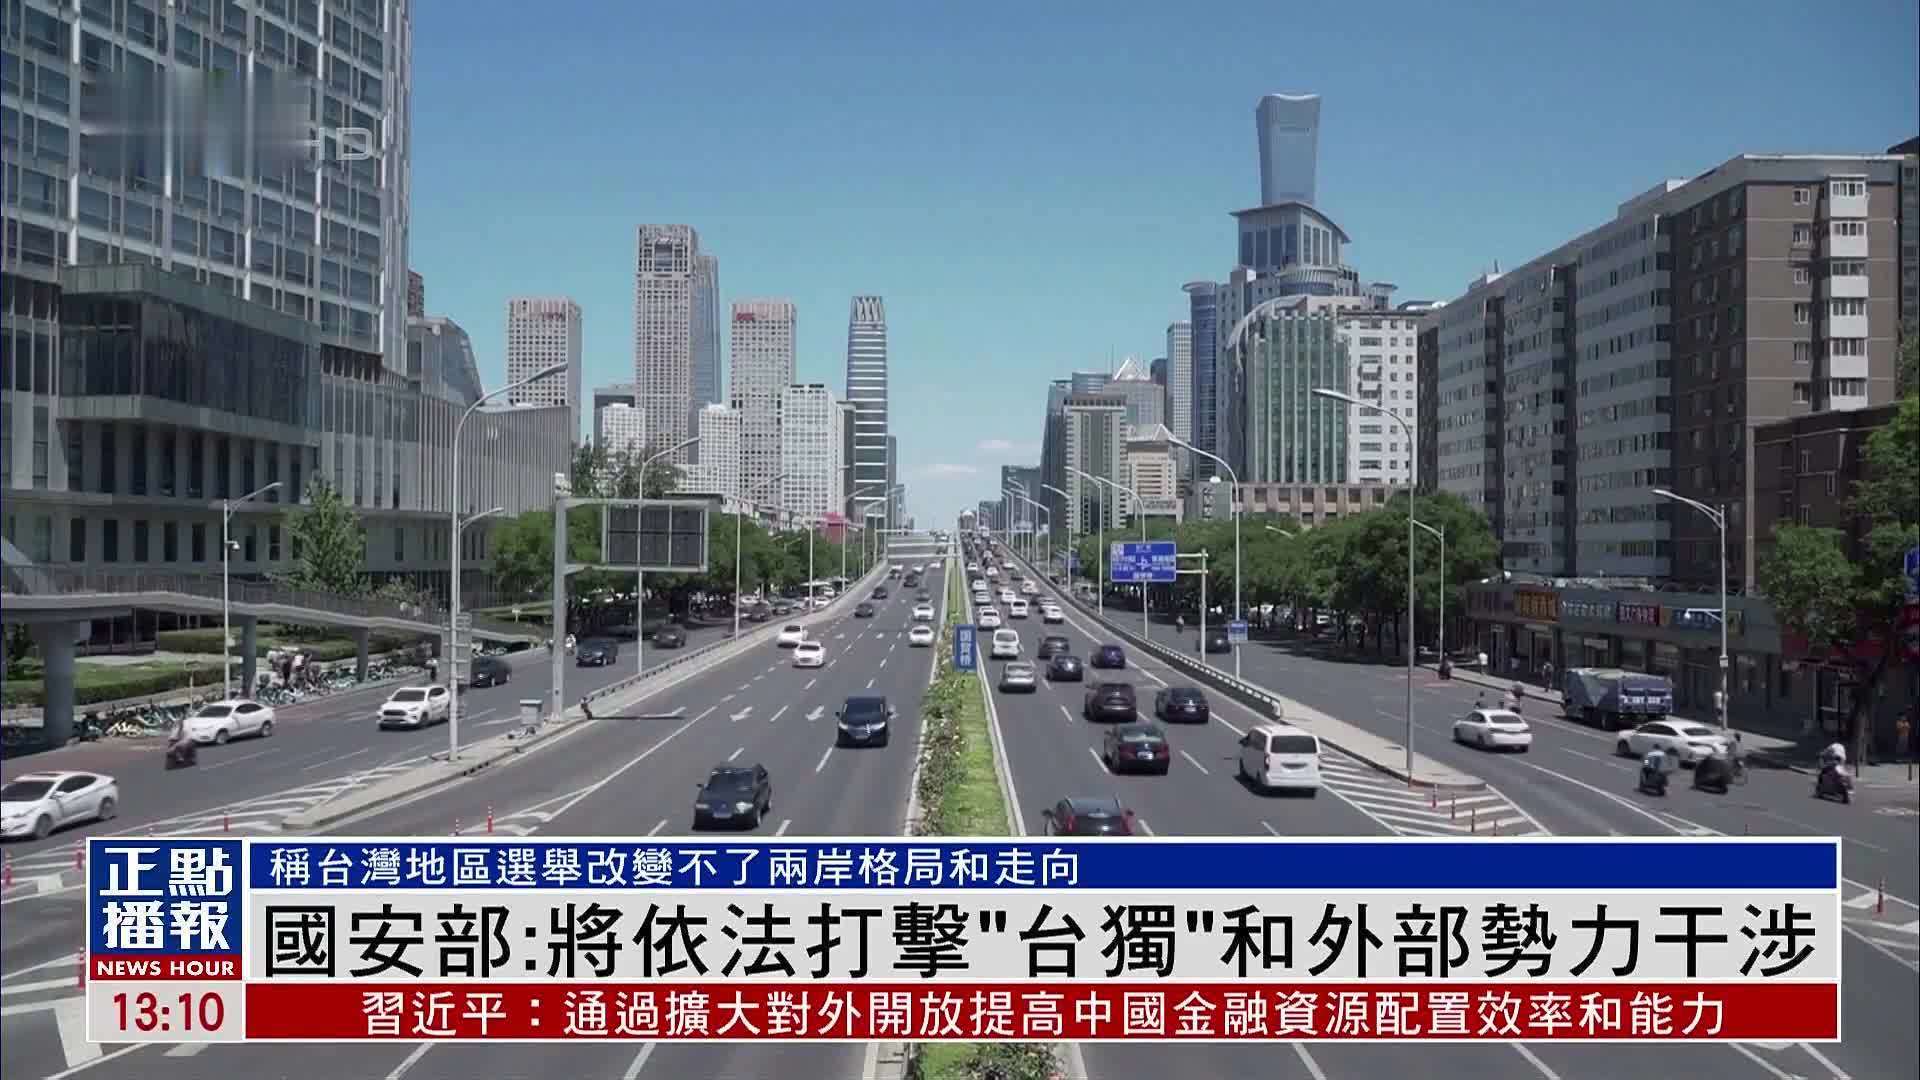 中国国安部刊文 坚决反对“台独”和外部干涉